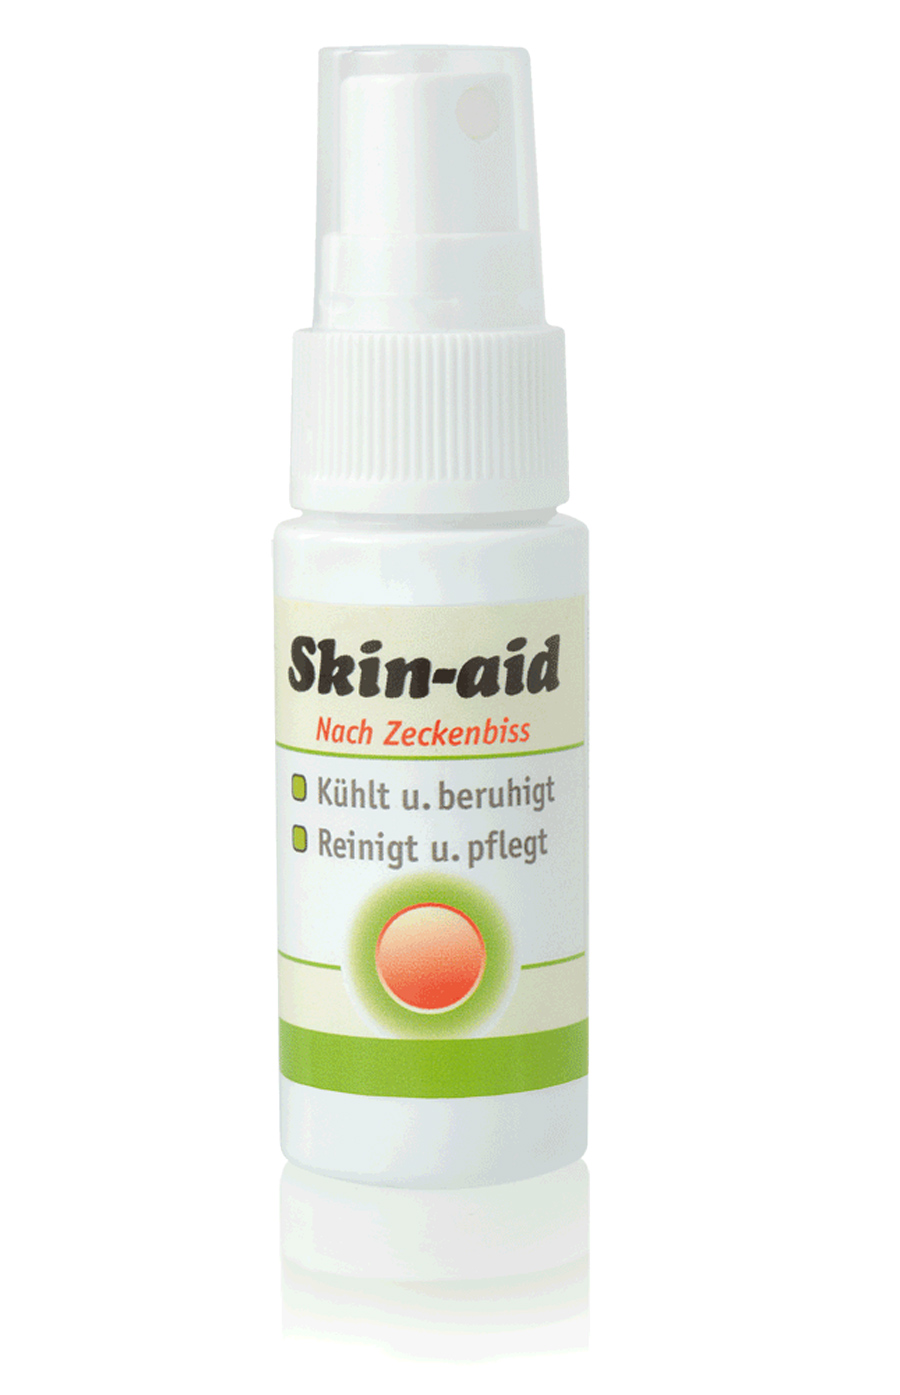 ANIBIO Skin aid